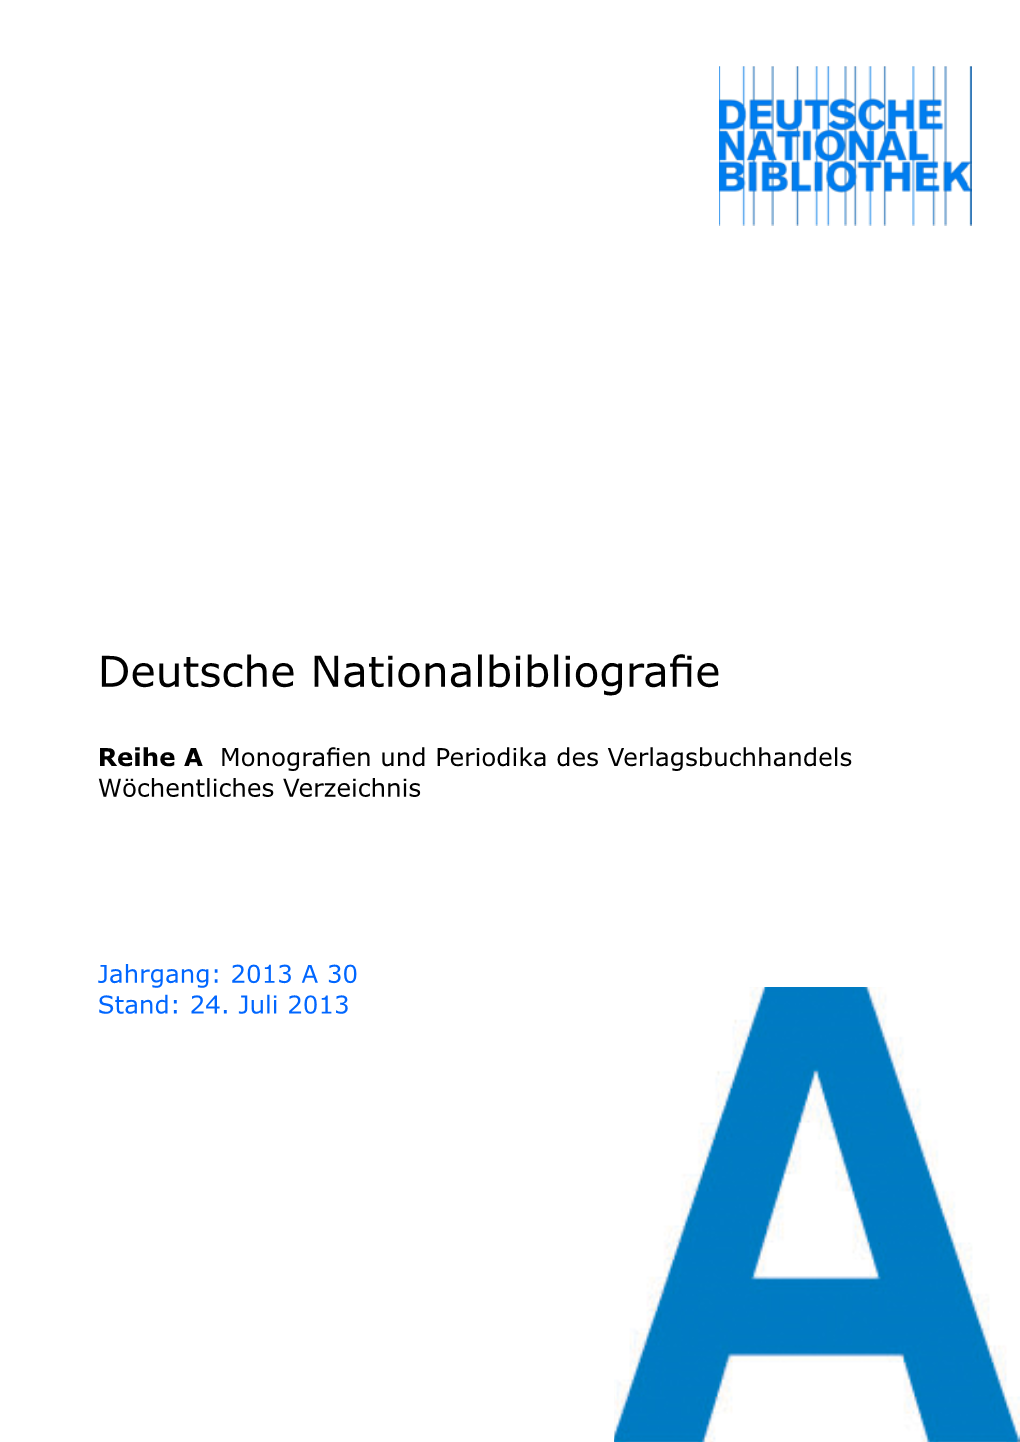 Deutsche Nationalbibliografie 2013 a 30